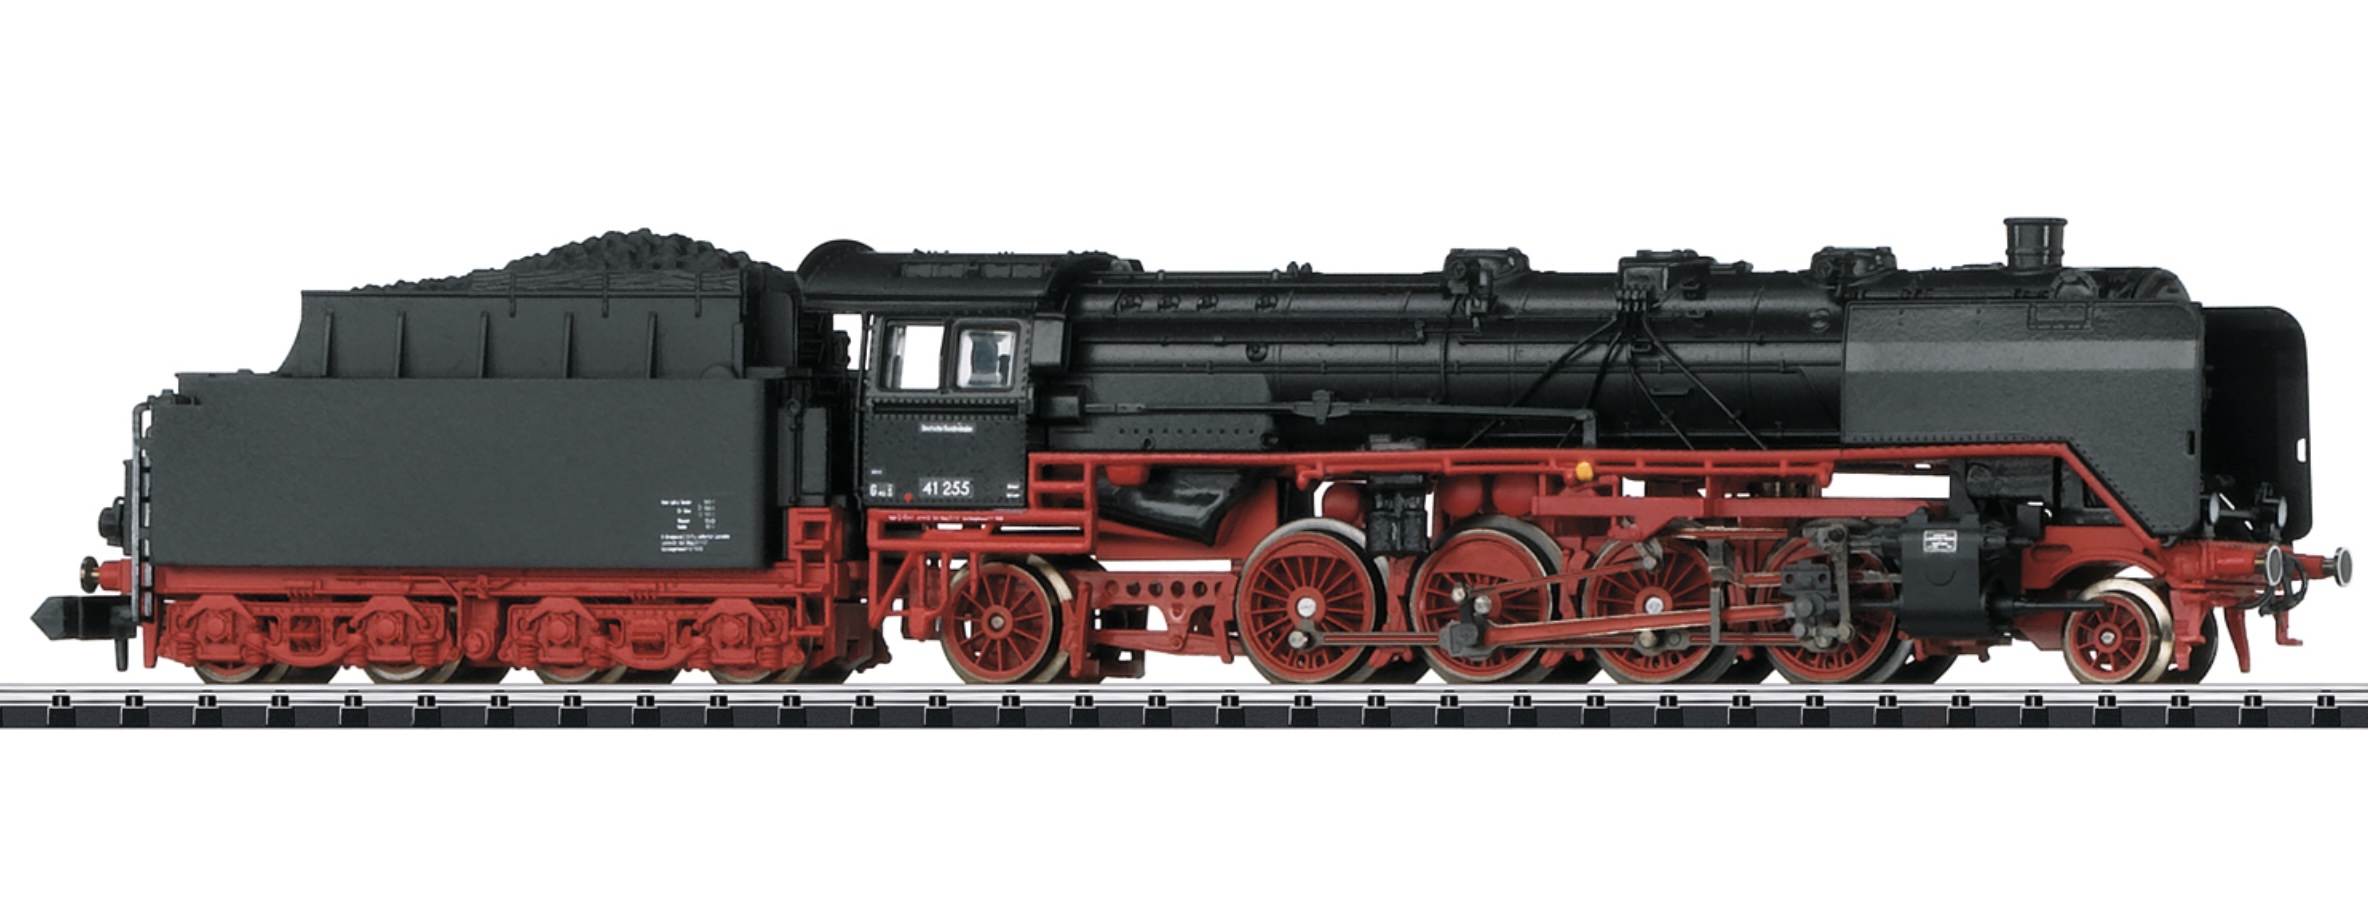 N Scale - Minitrix - 16415 - Locomotive, Steam, 2-10-2 Class 41 - Deutsche Bundesbahn - 41 255